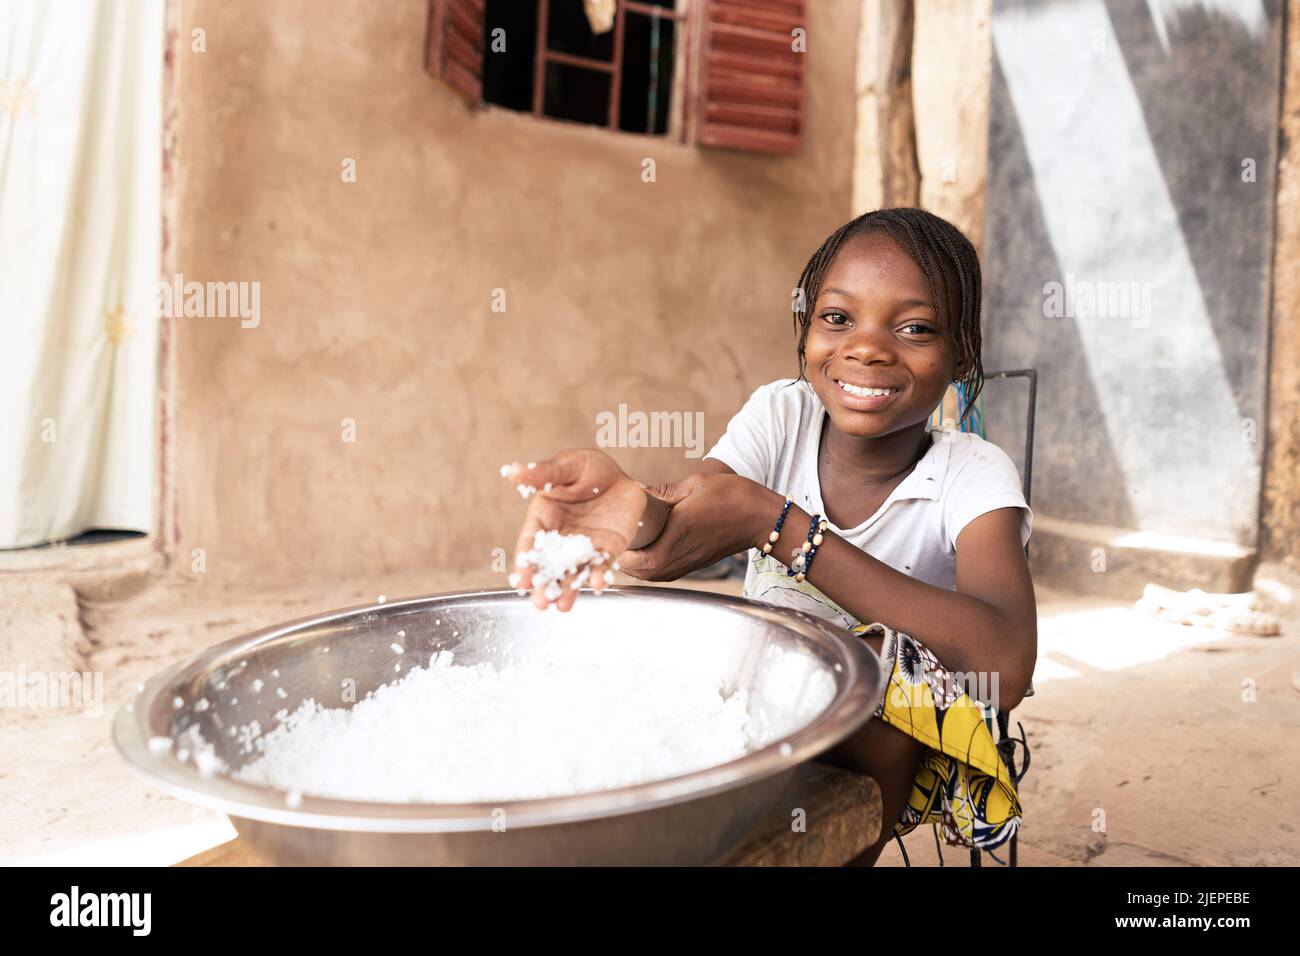 Petite fille africaine radieuse devant un plat géant appréciant son simple déjeuner fait de riz blanc bouilli Banque D'Images